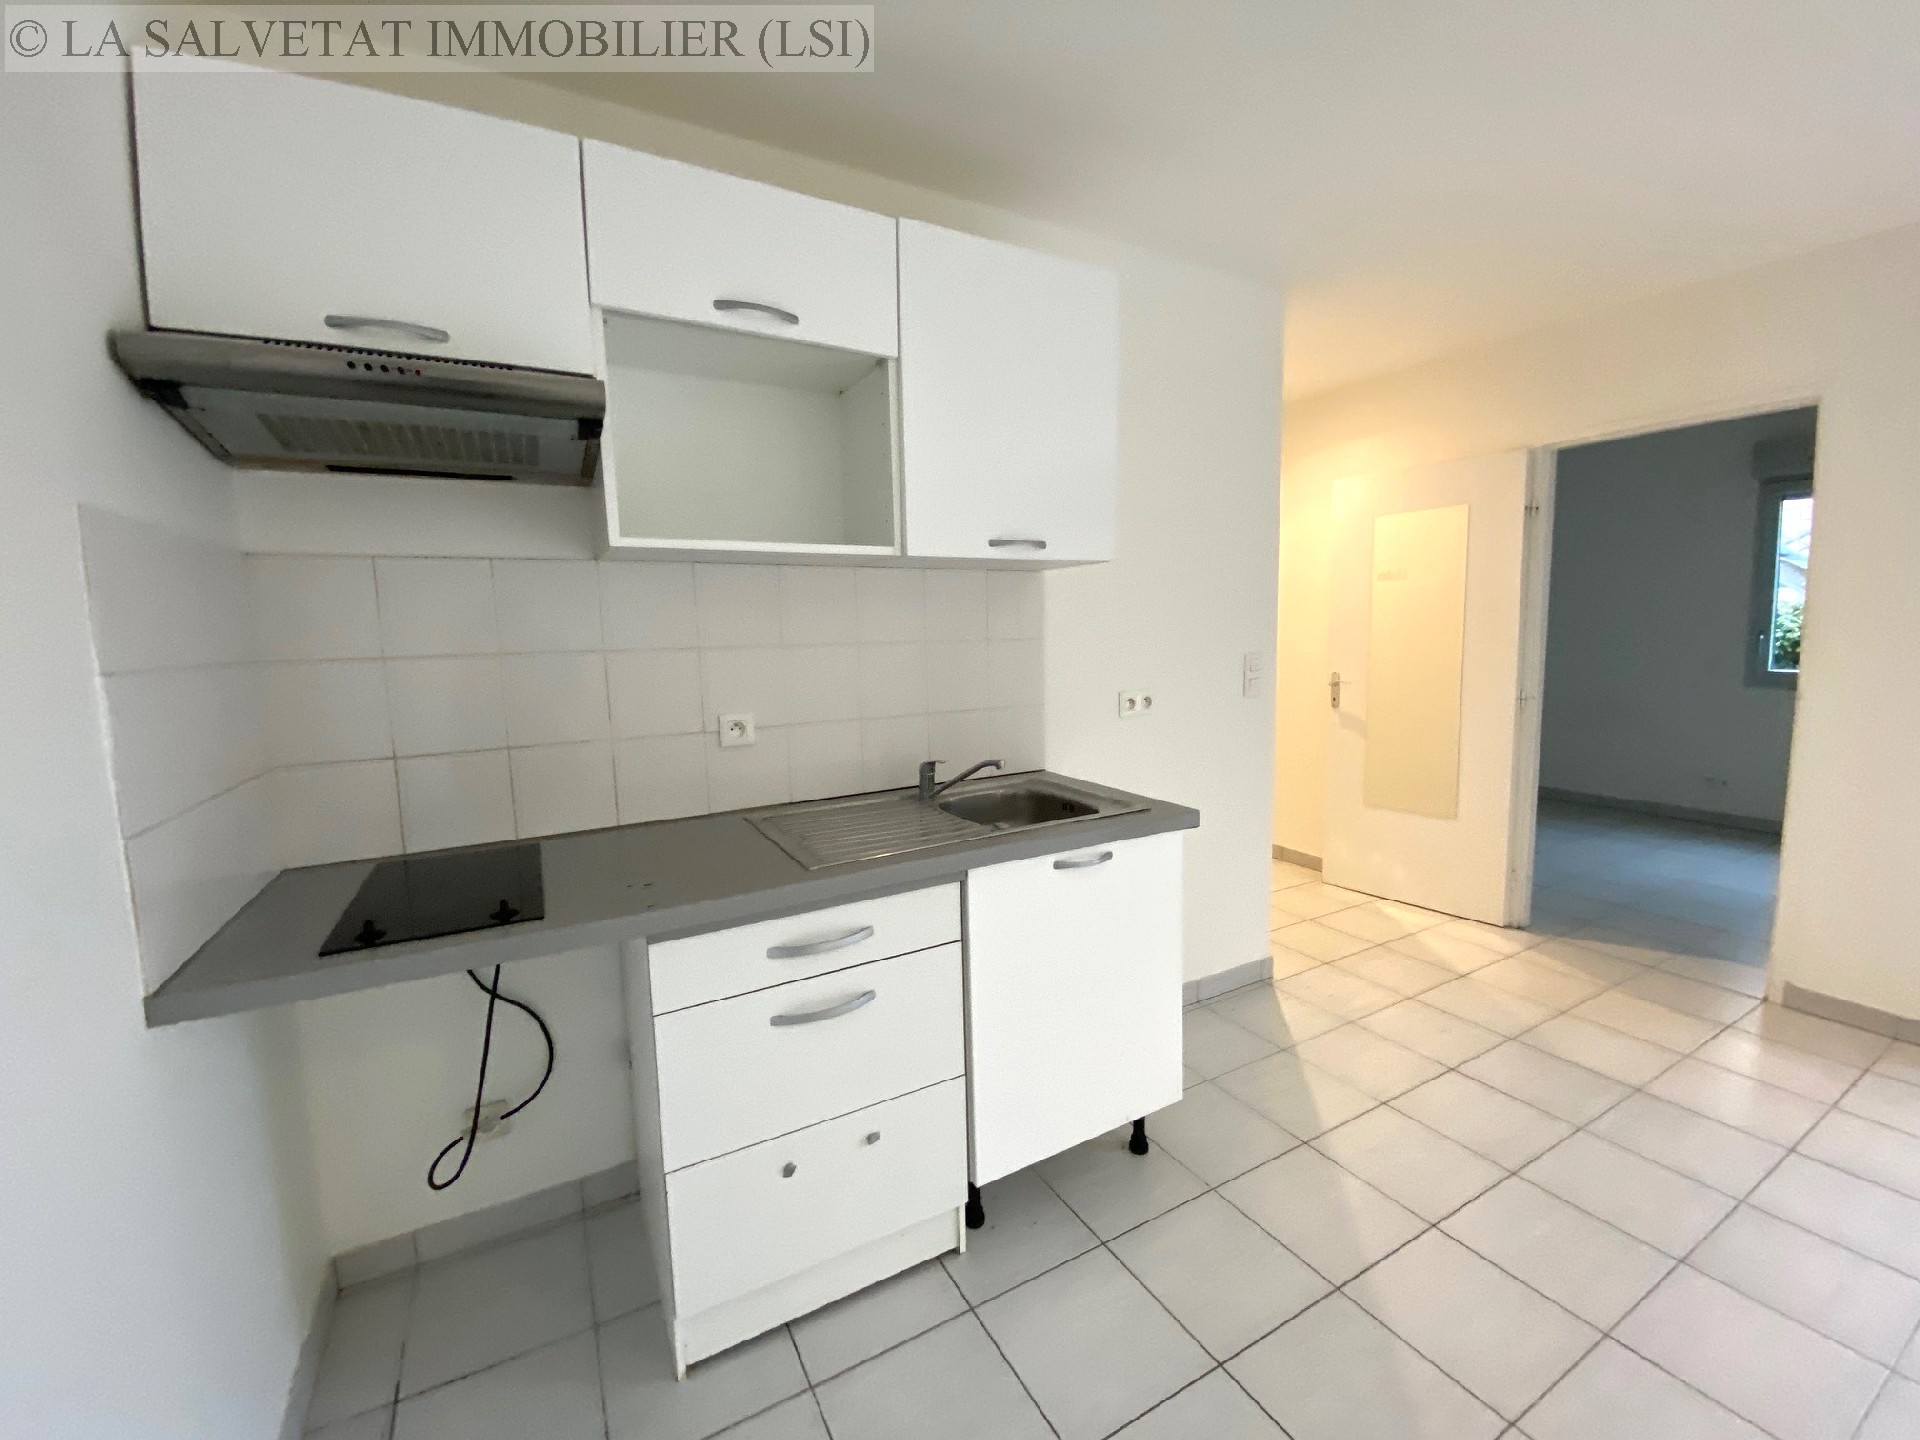 Vente appartement - LA SALVETAT ST GILLES<br>42 m², 2 pièces